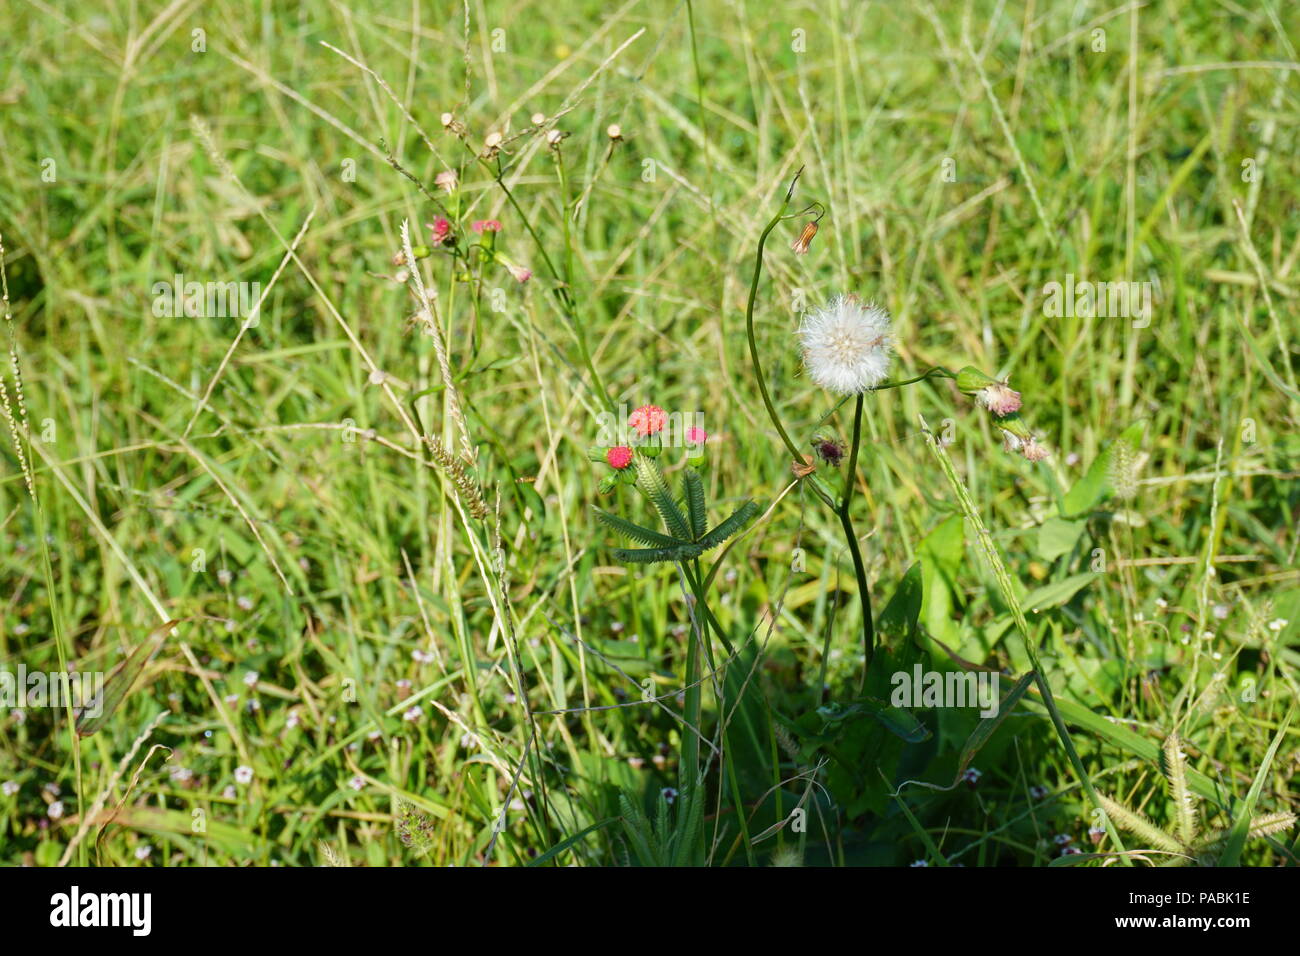 Florida tasselflower rojo similar a las dos etapas tasselflower lila pétalo y puffy semillas ( Emilia fosbergii) Foto de stock